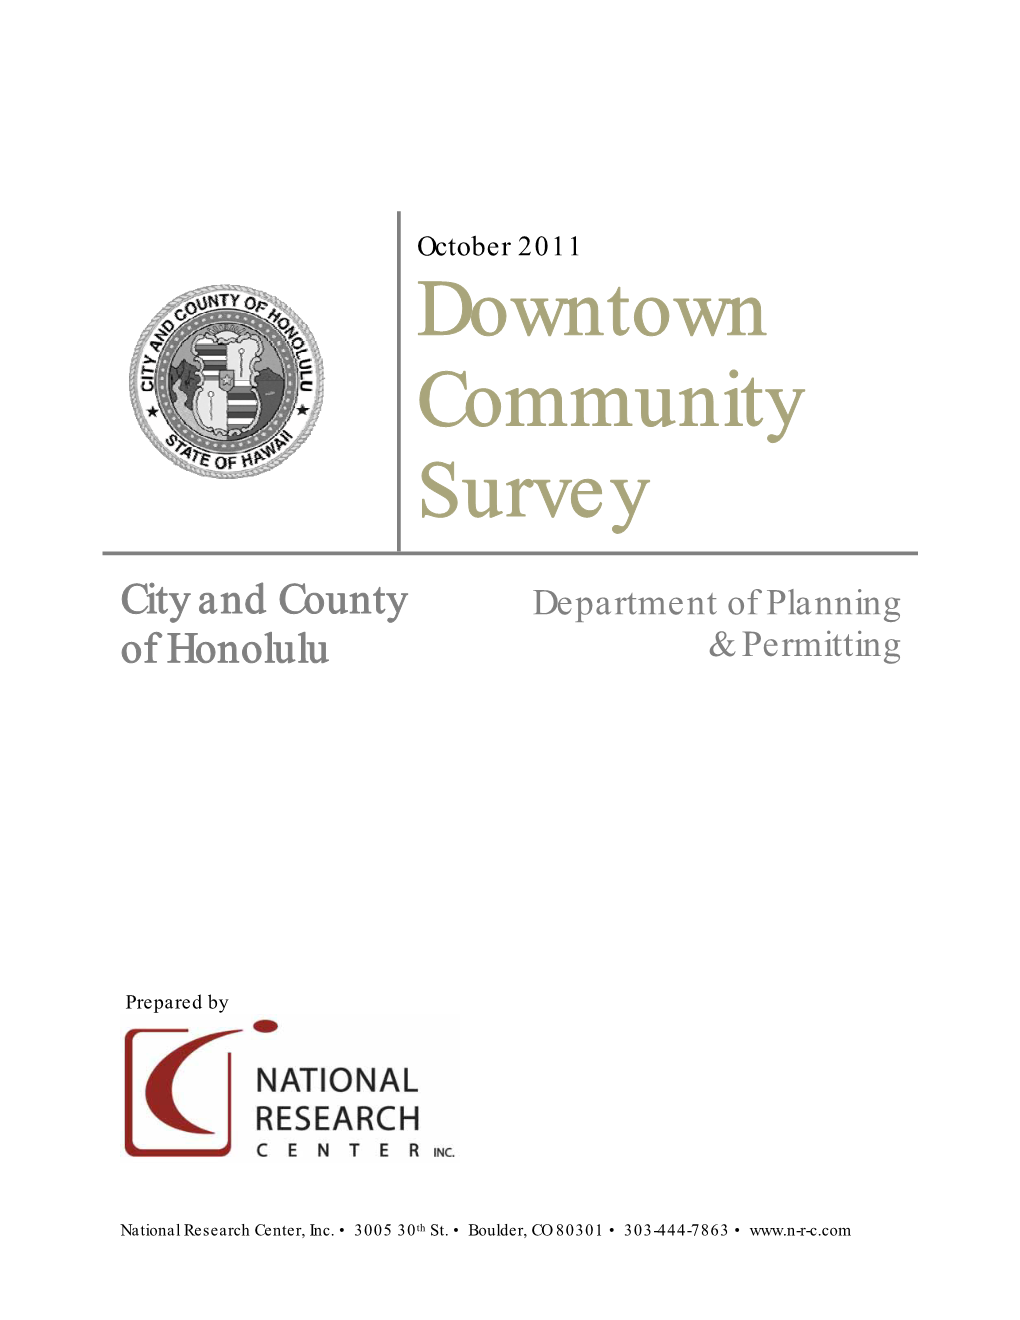 Downtown Community Survey